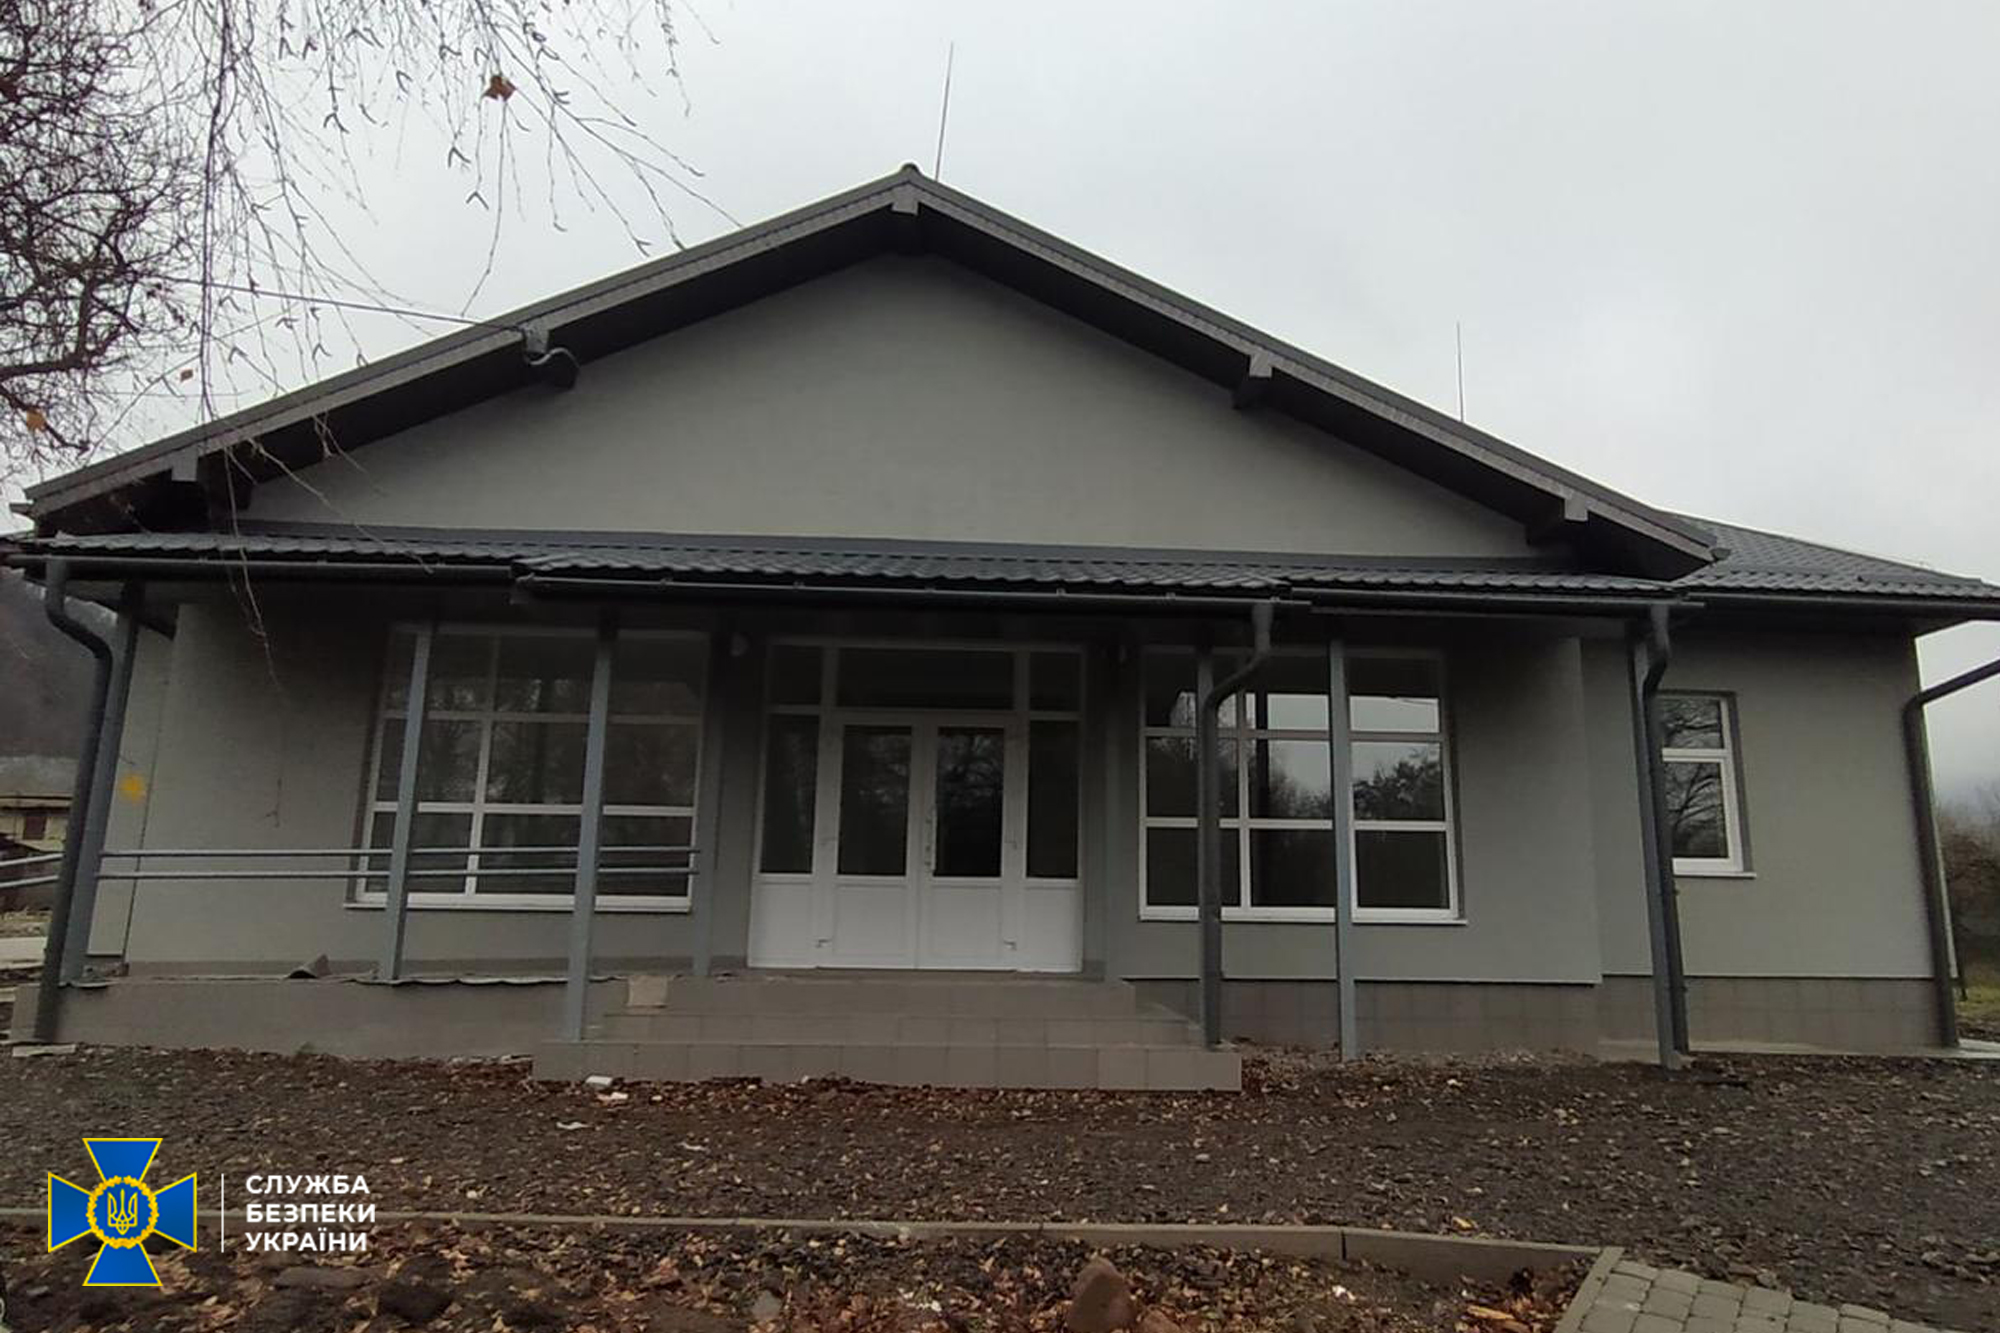 СБУ раскрыла в Закарпатье схему хищения бюджетных средств, выделенных правительством на строительство сельских поликлиник.